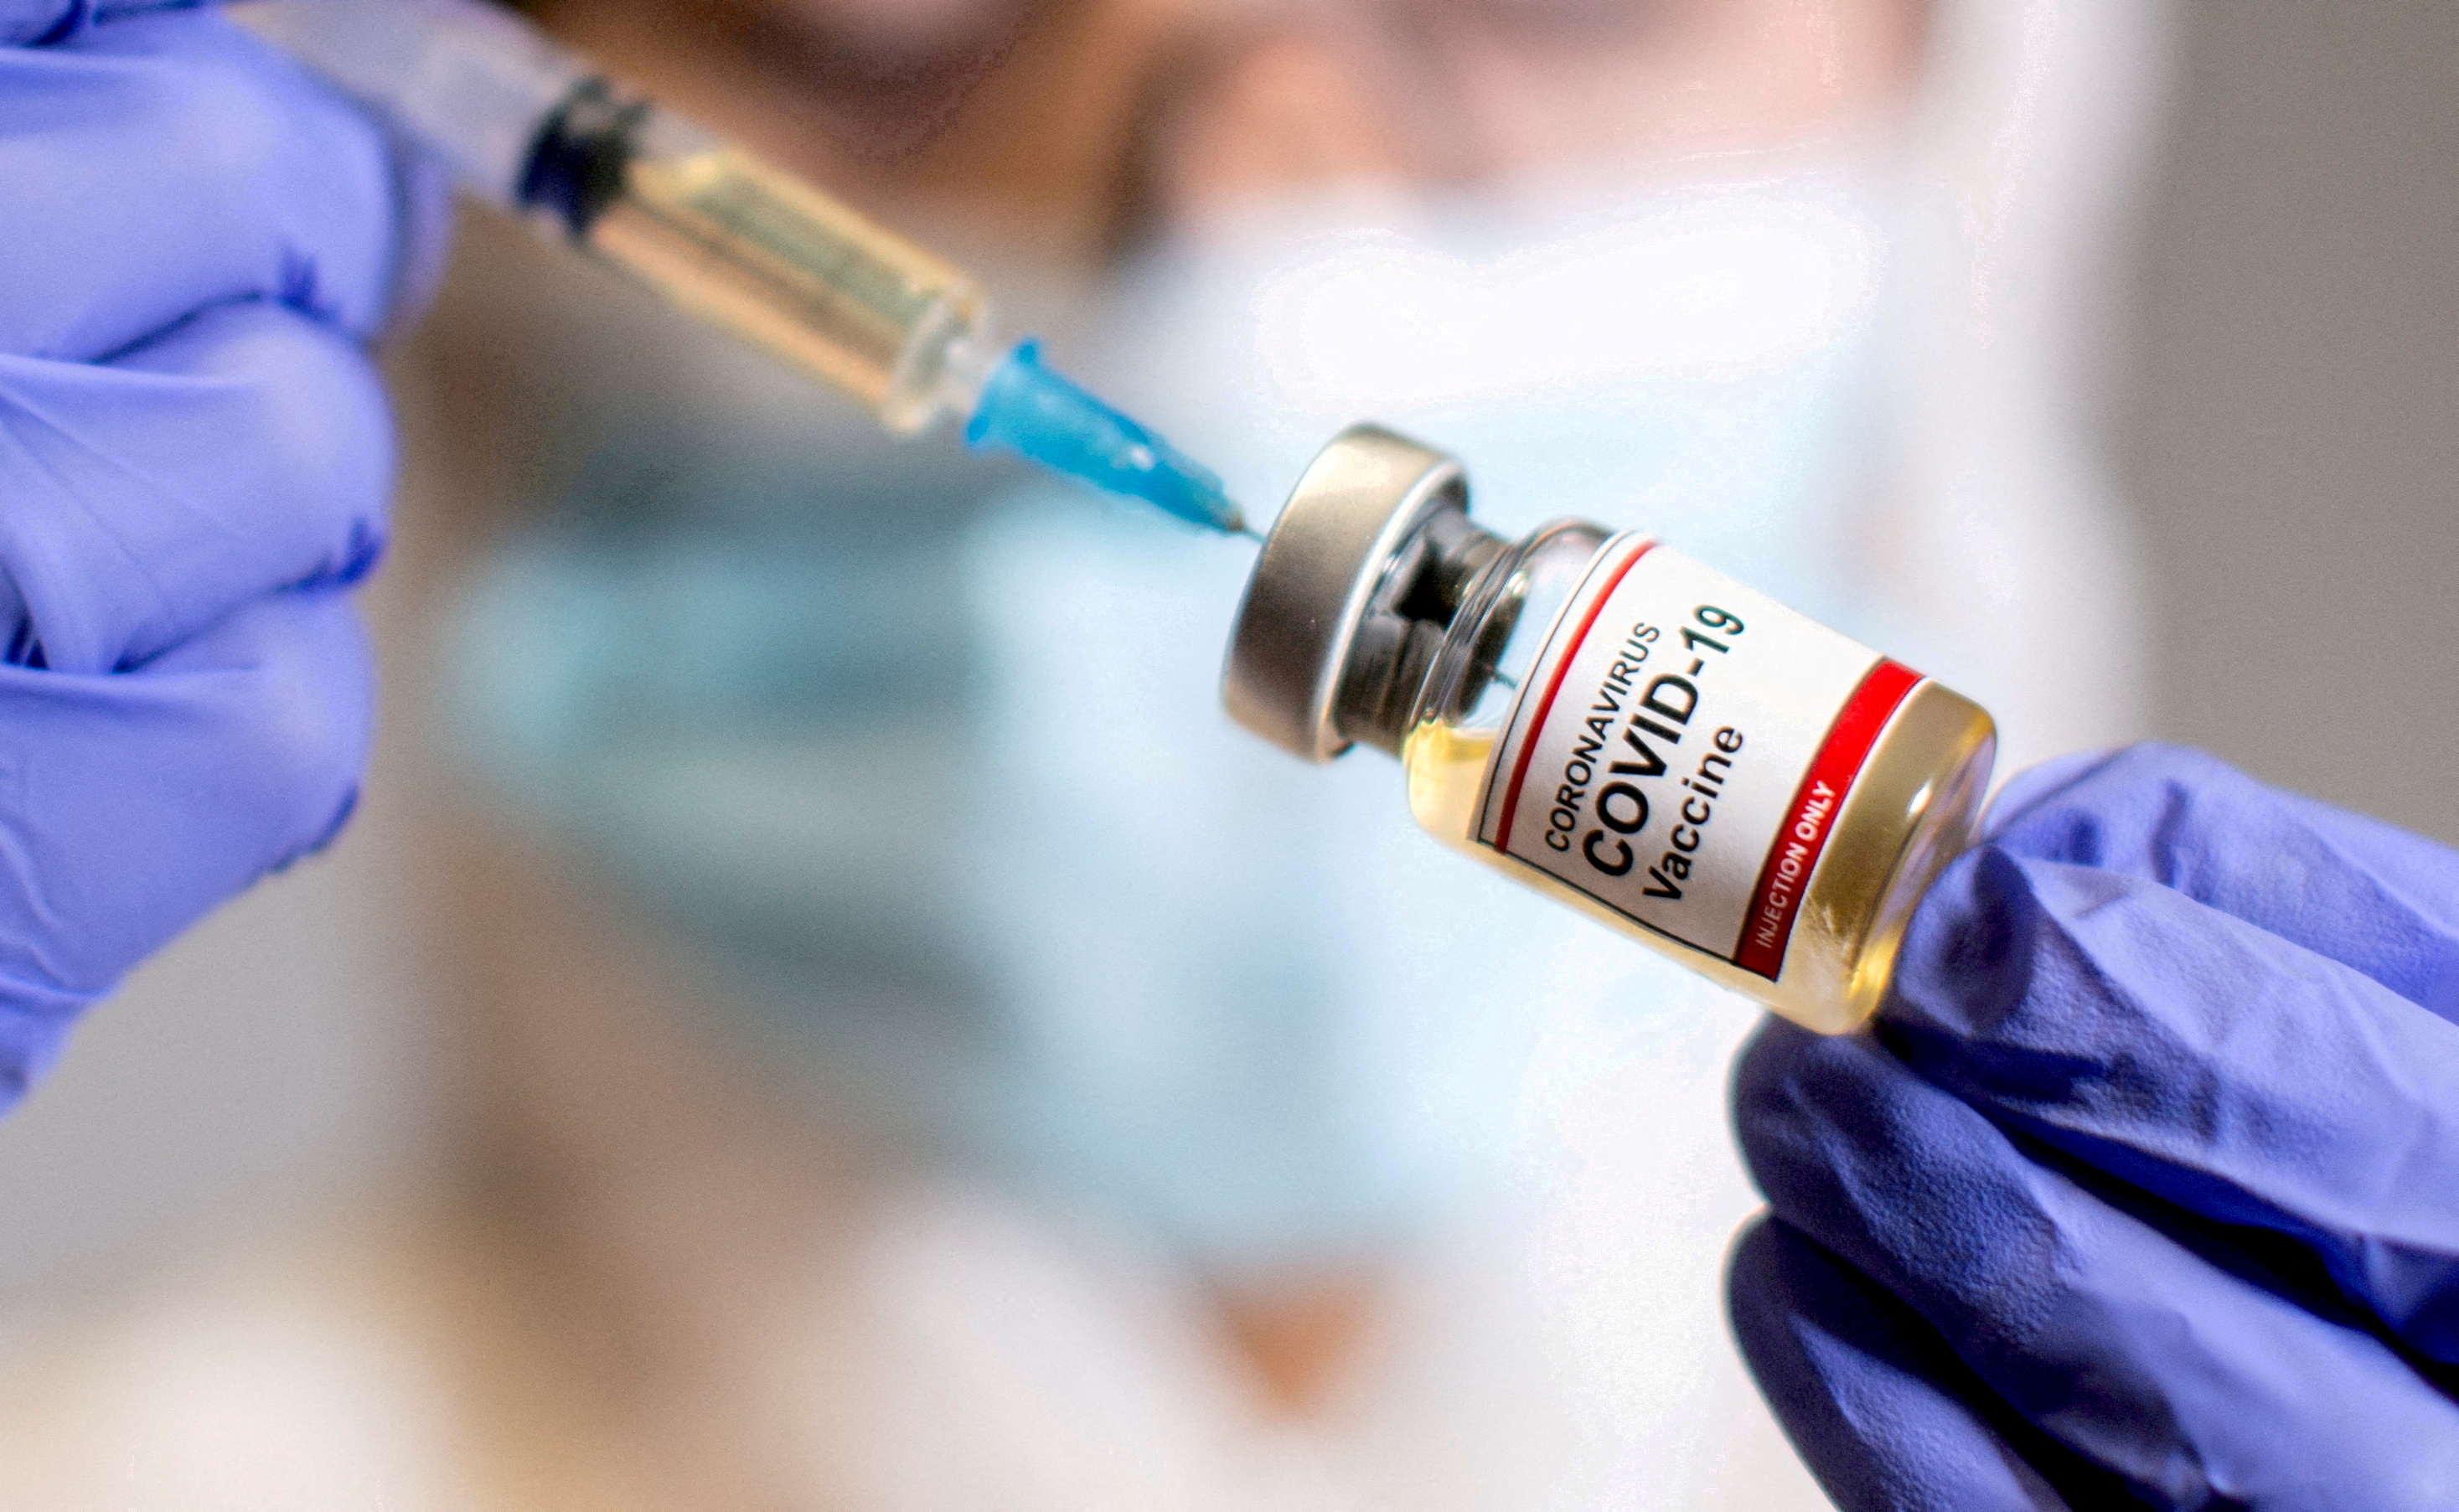 Las vacunas siguen faltando de a millones en muchos países. Apenas el 62% de la población completó su esquema inicial de vacunación contra el COVID-19. (REUTERS/Dado Ruvic/File Photo)